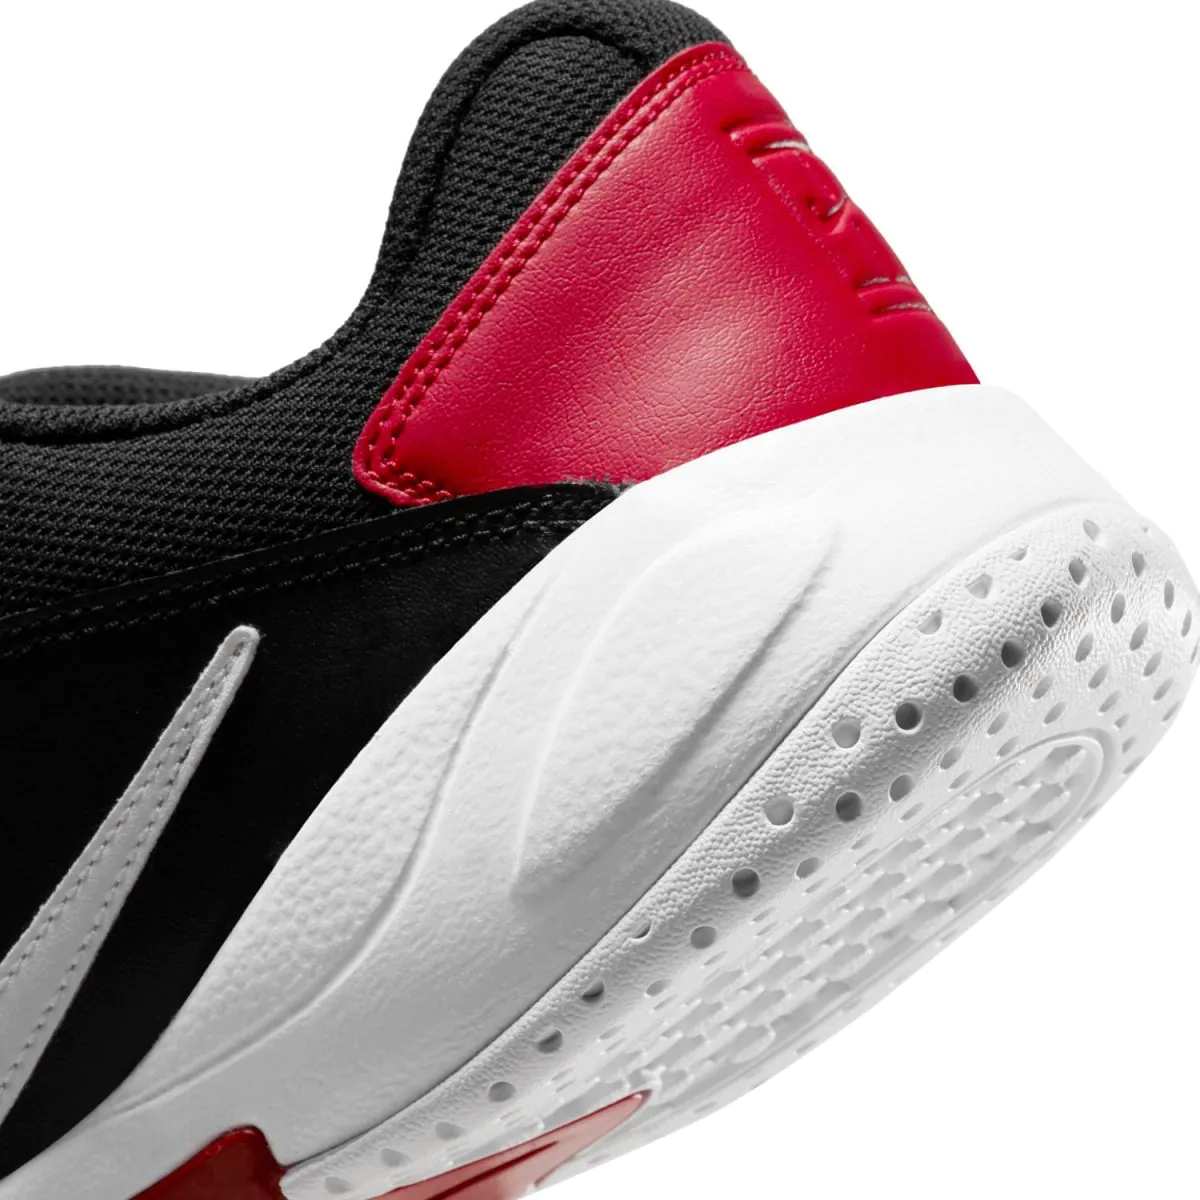 Nike Court Lite 2 Men's Tennis Shoes AR8836-008